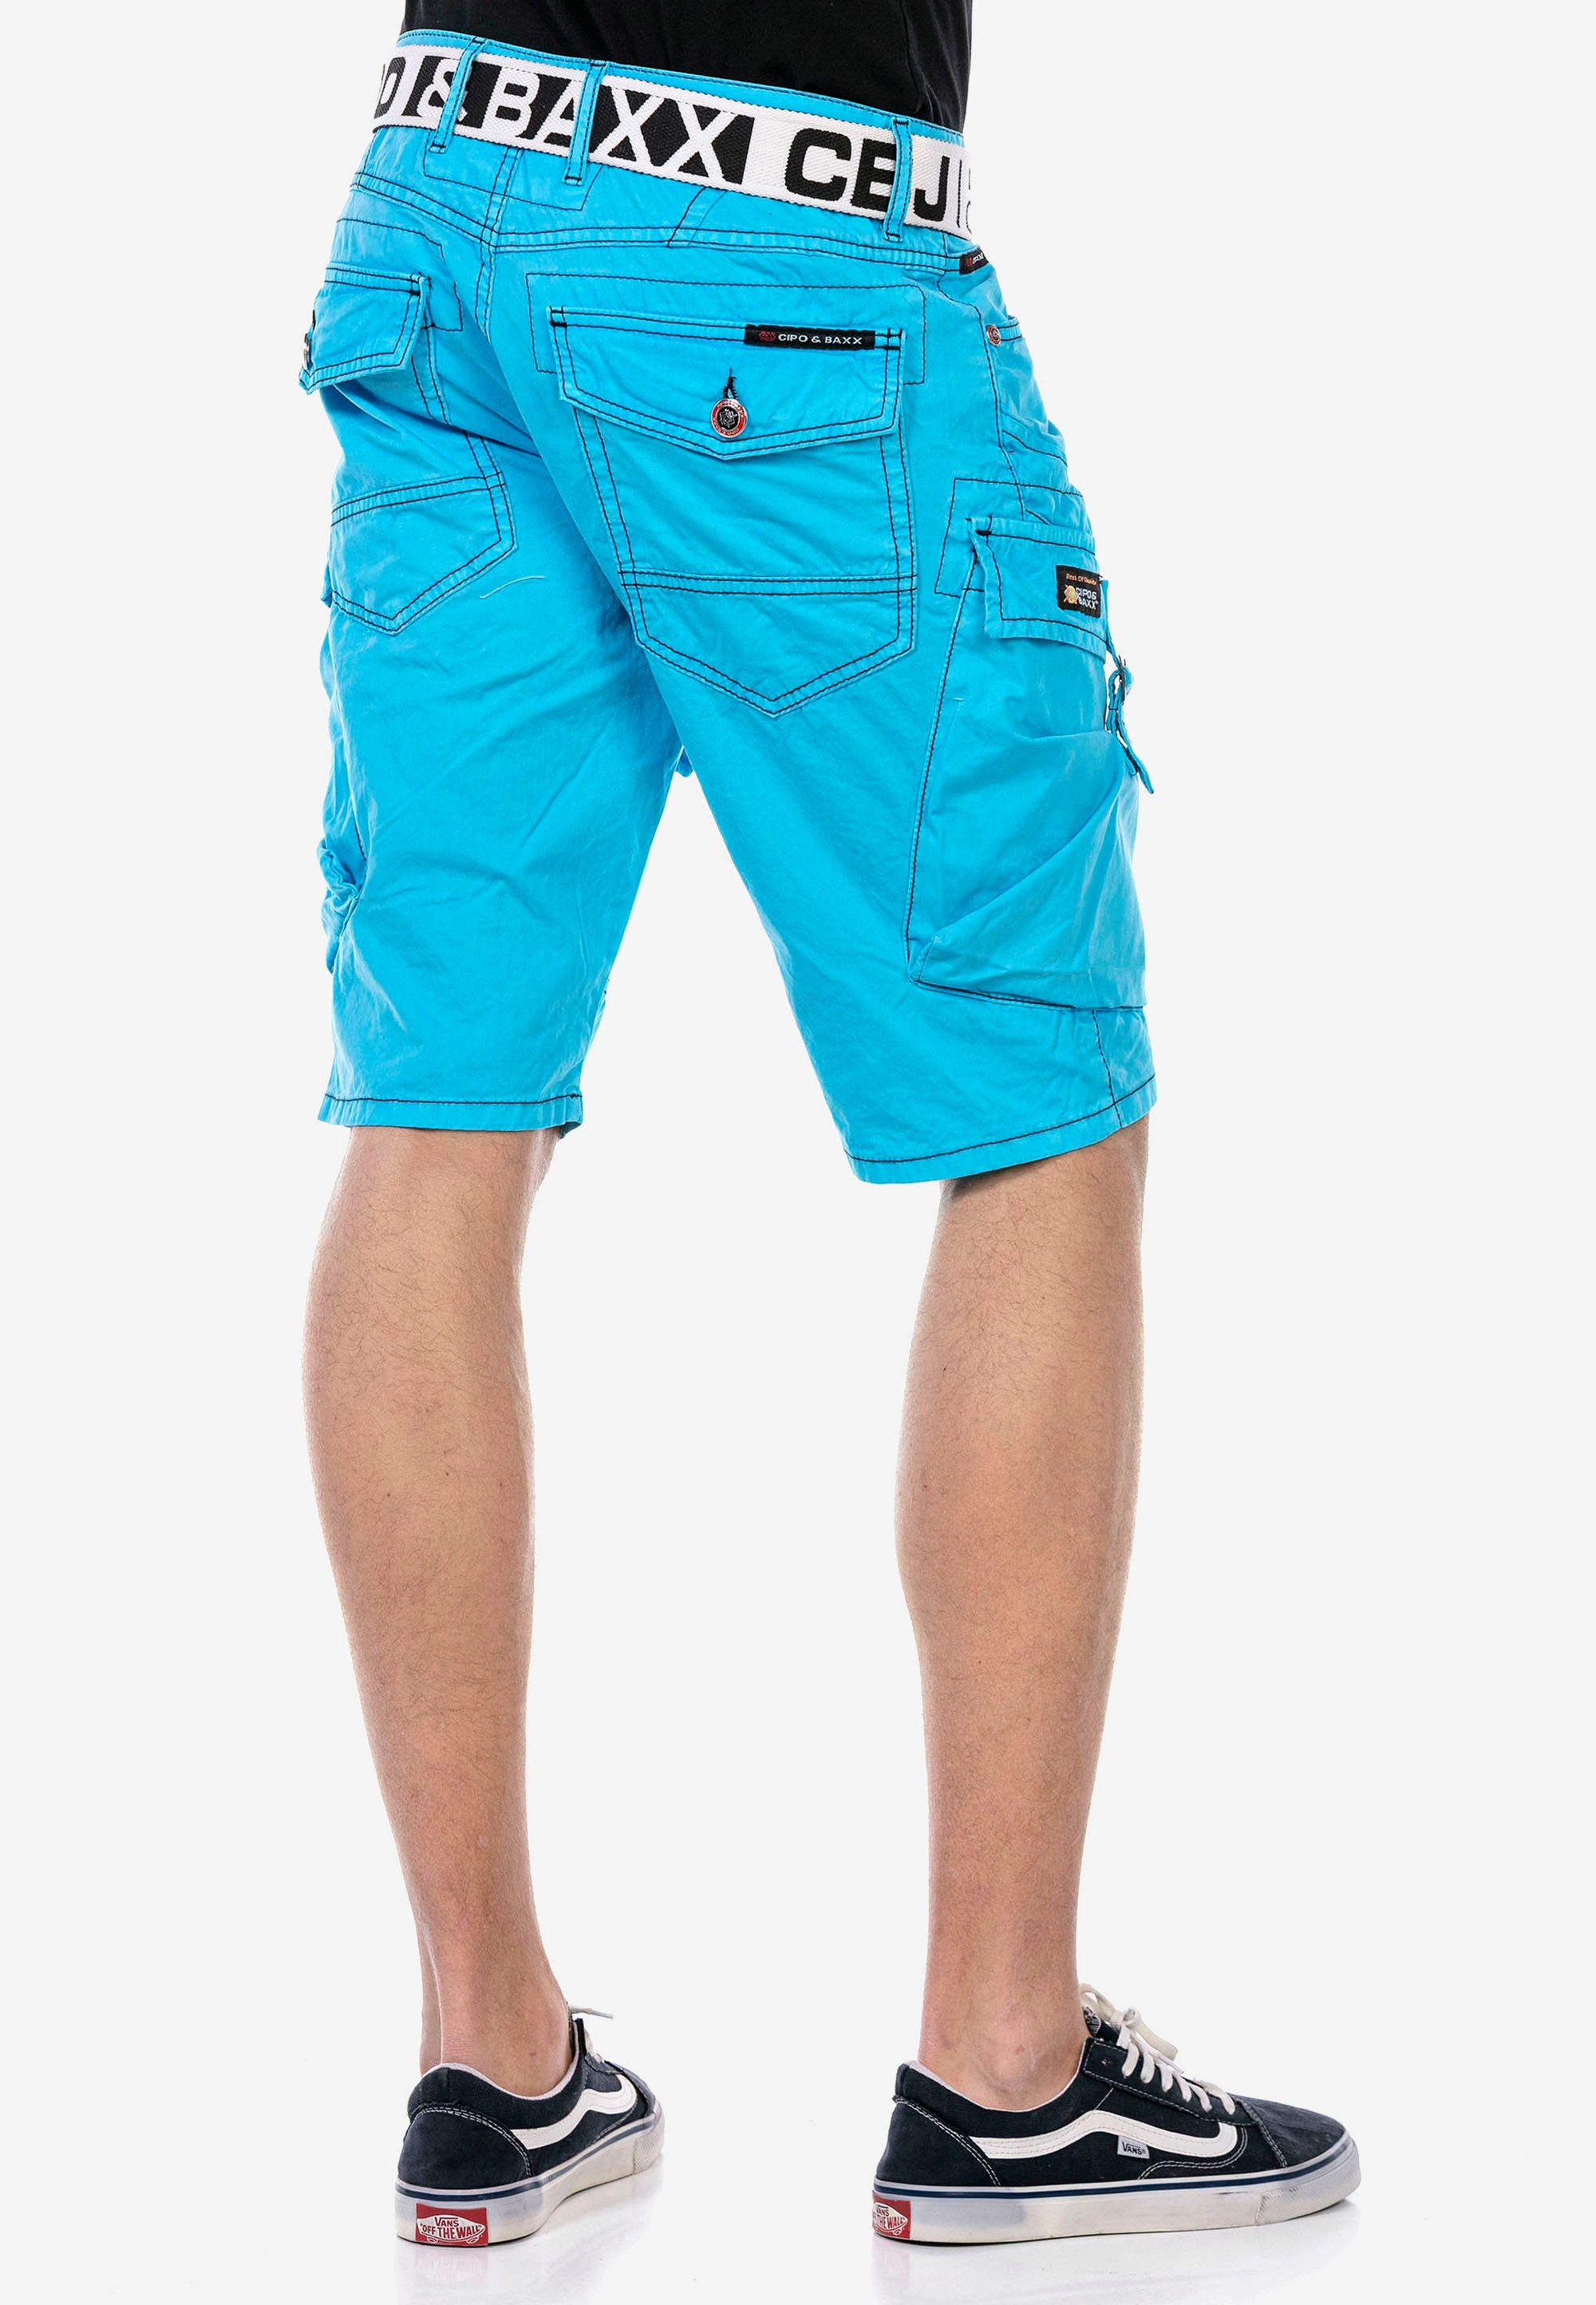 Cipo & hellblau coolen mit Baxx Cargotaschen Shorts